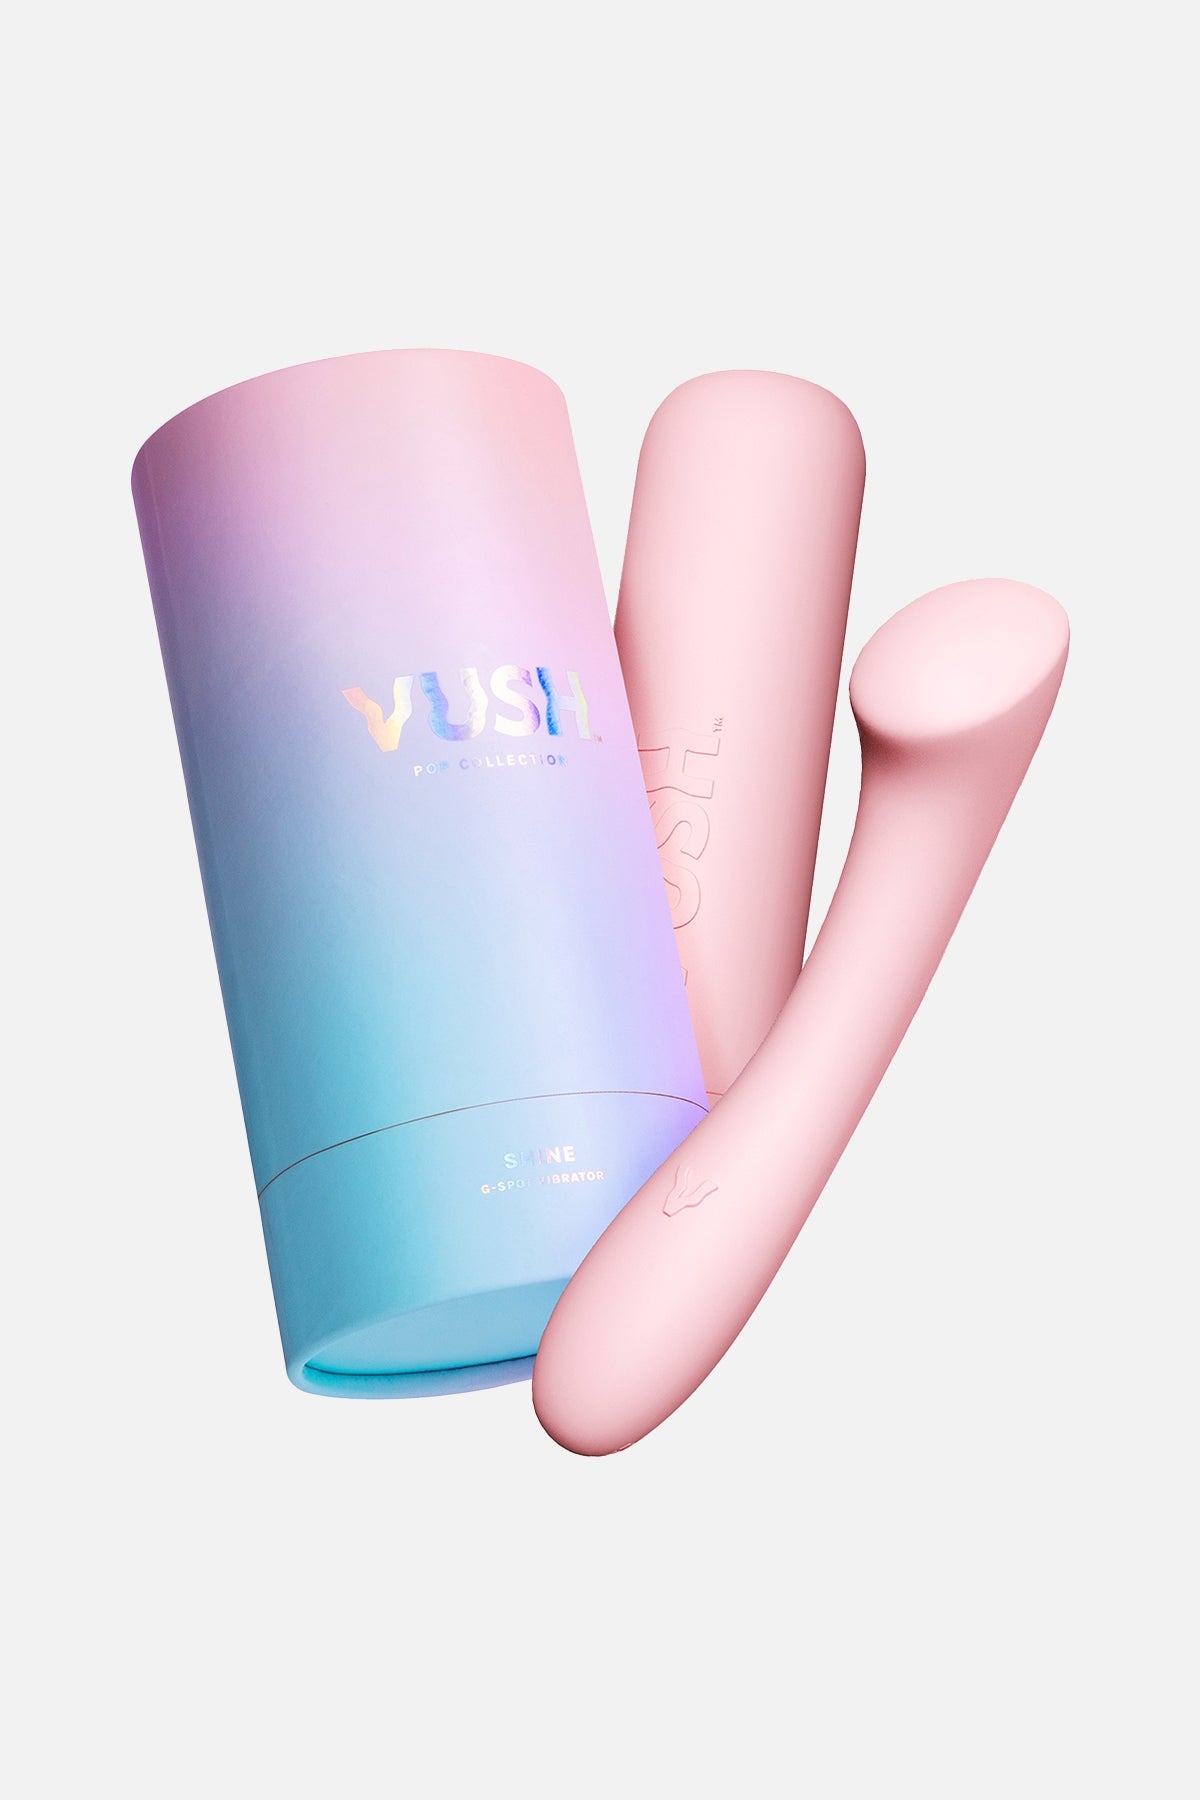 Vush Shine G-Spot Vibrator Pink